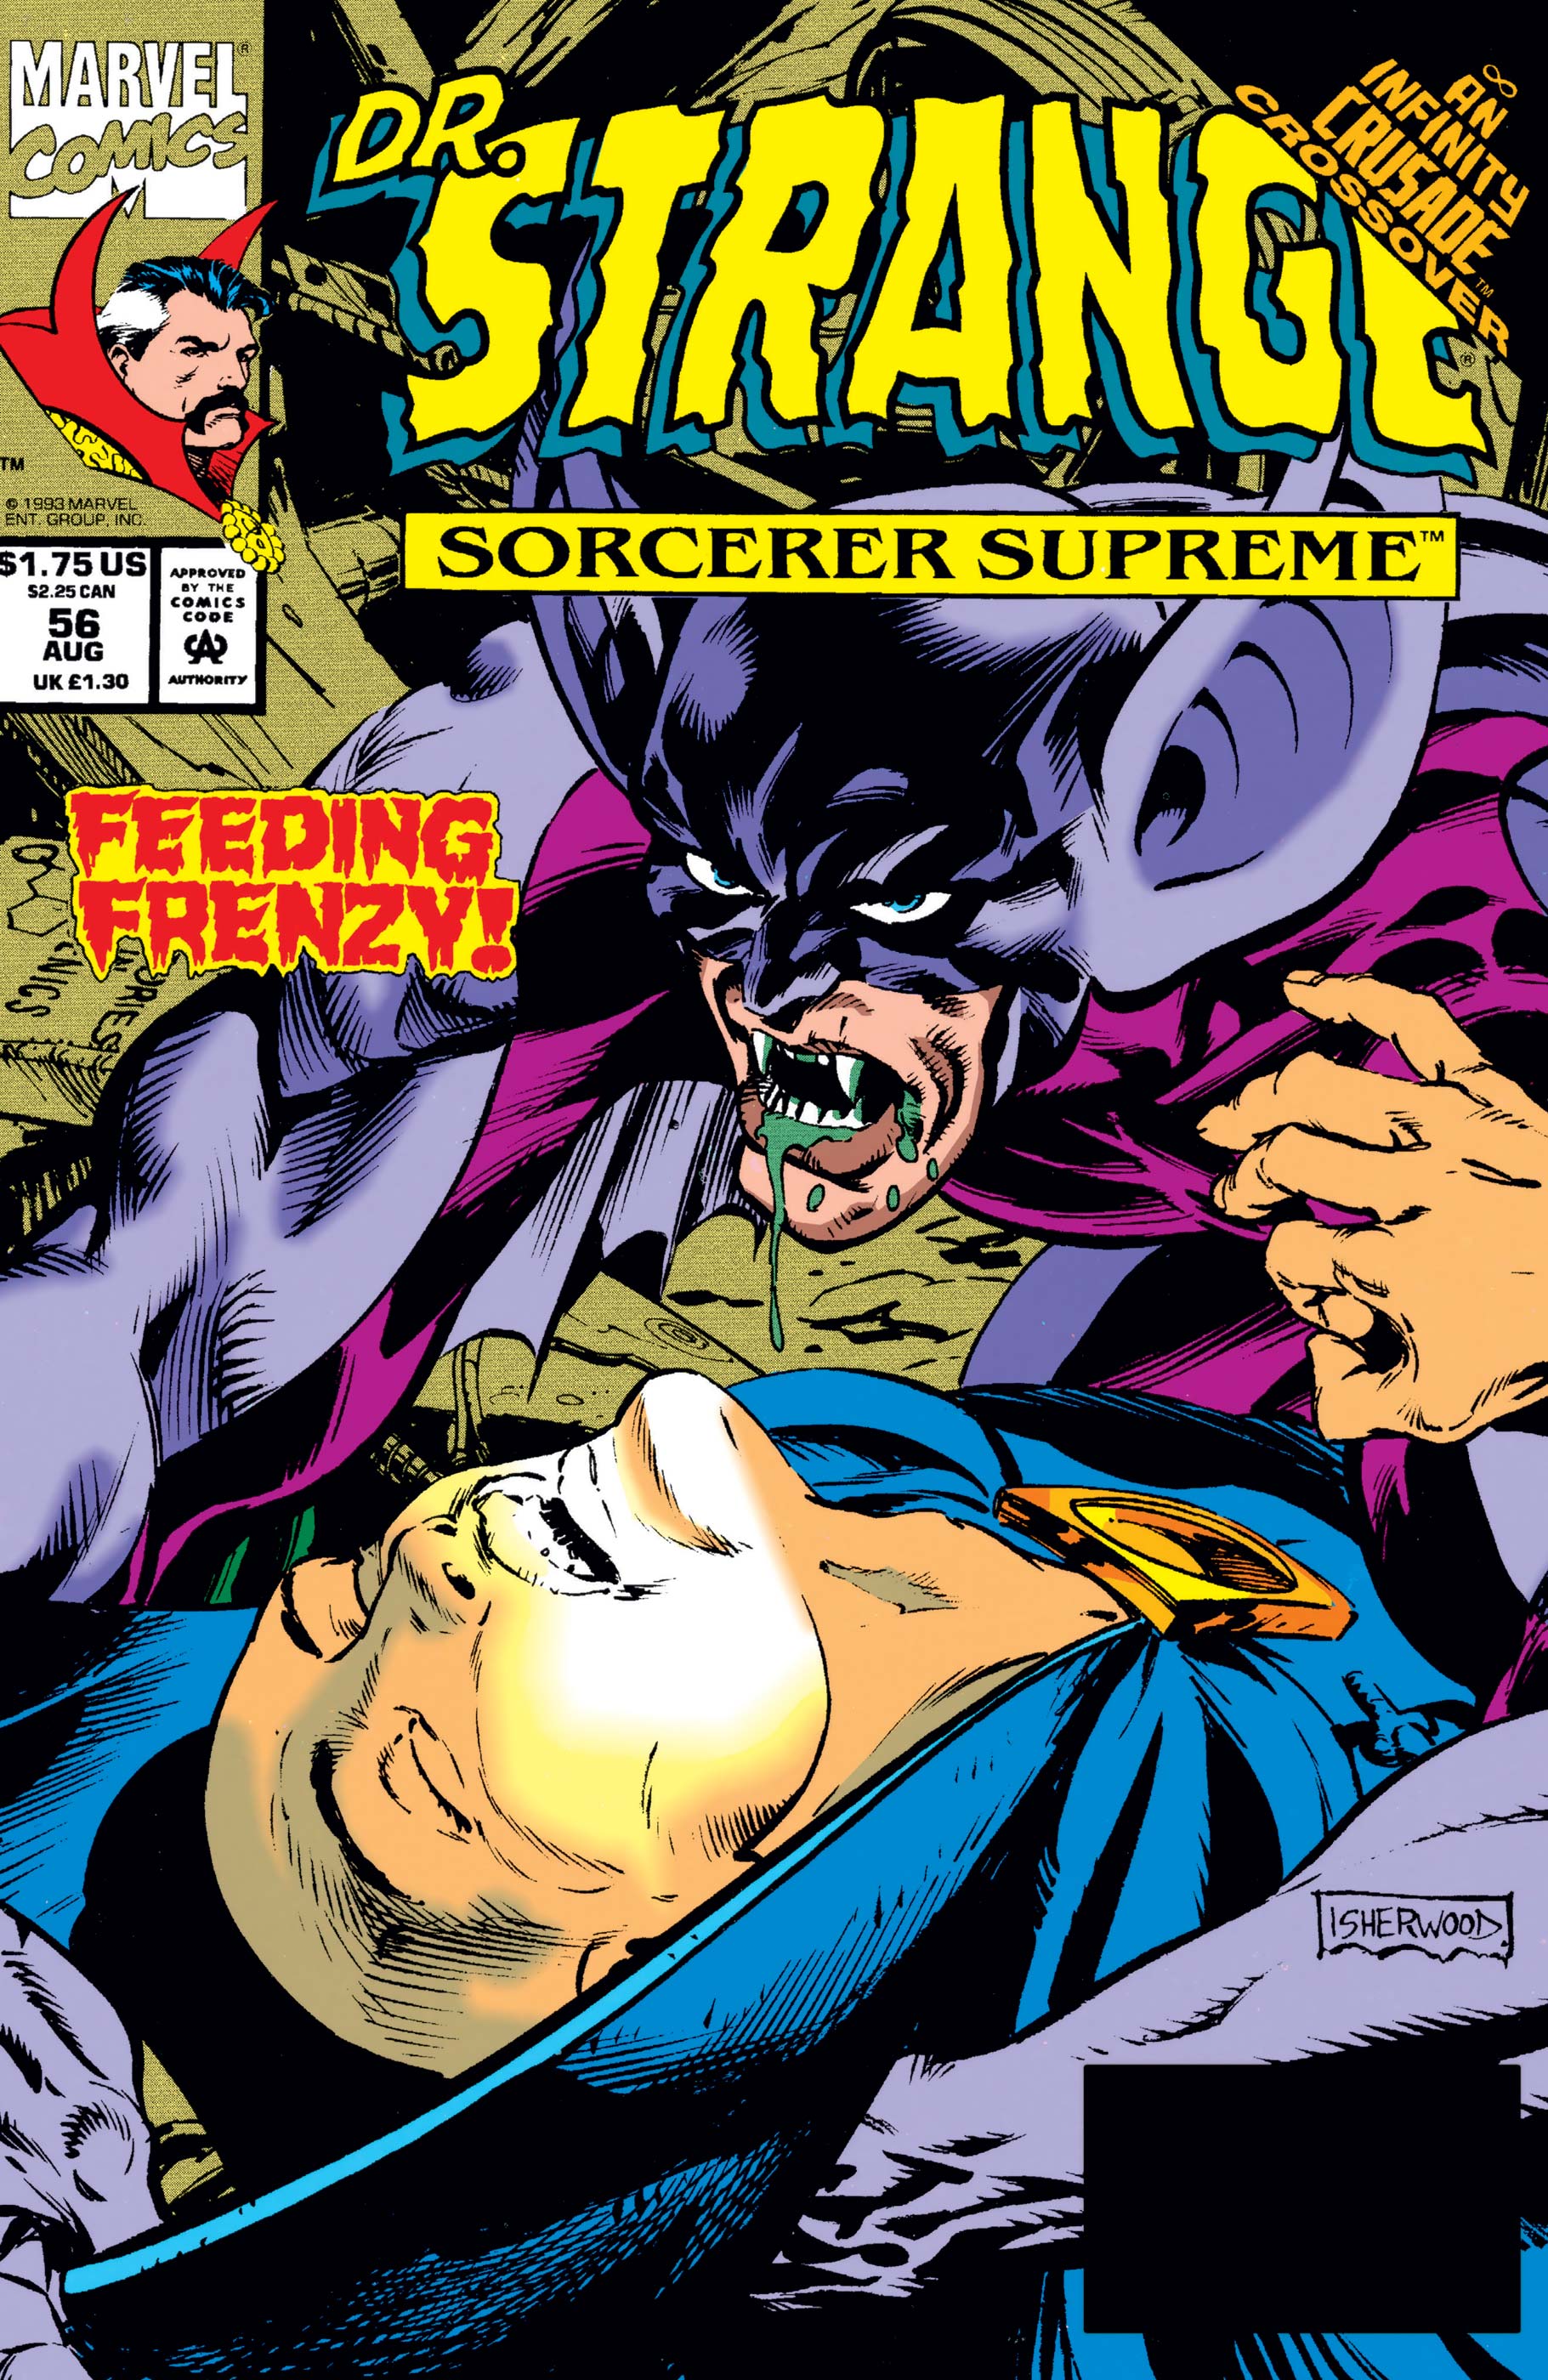 Doctor Strange, Sorcerer Supreme (1988) #56